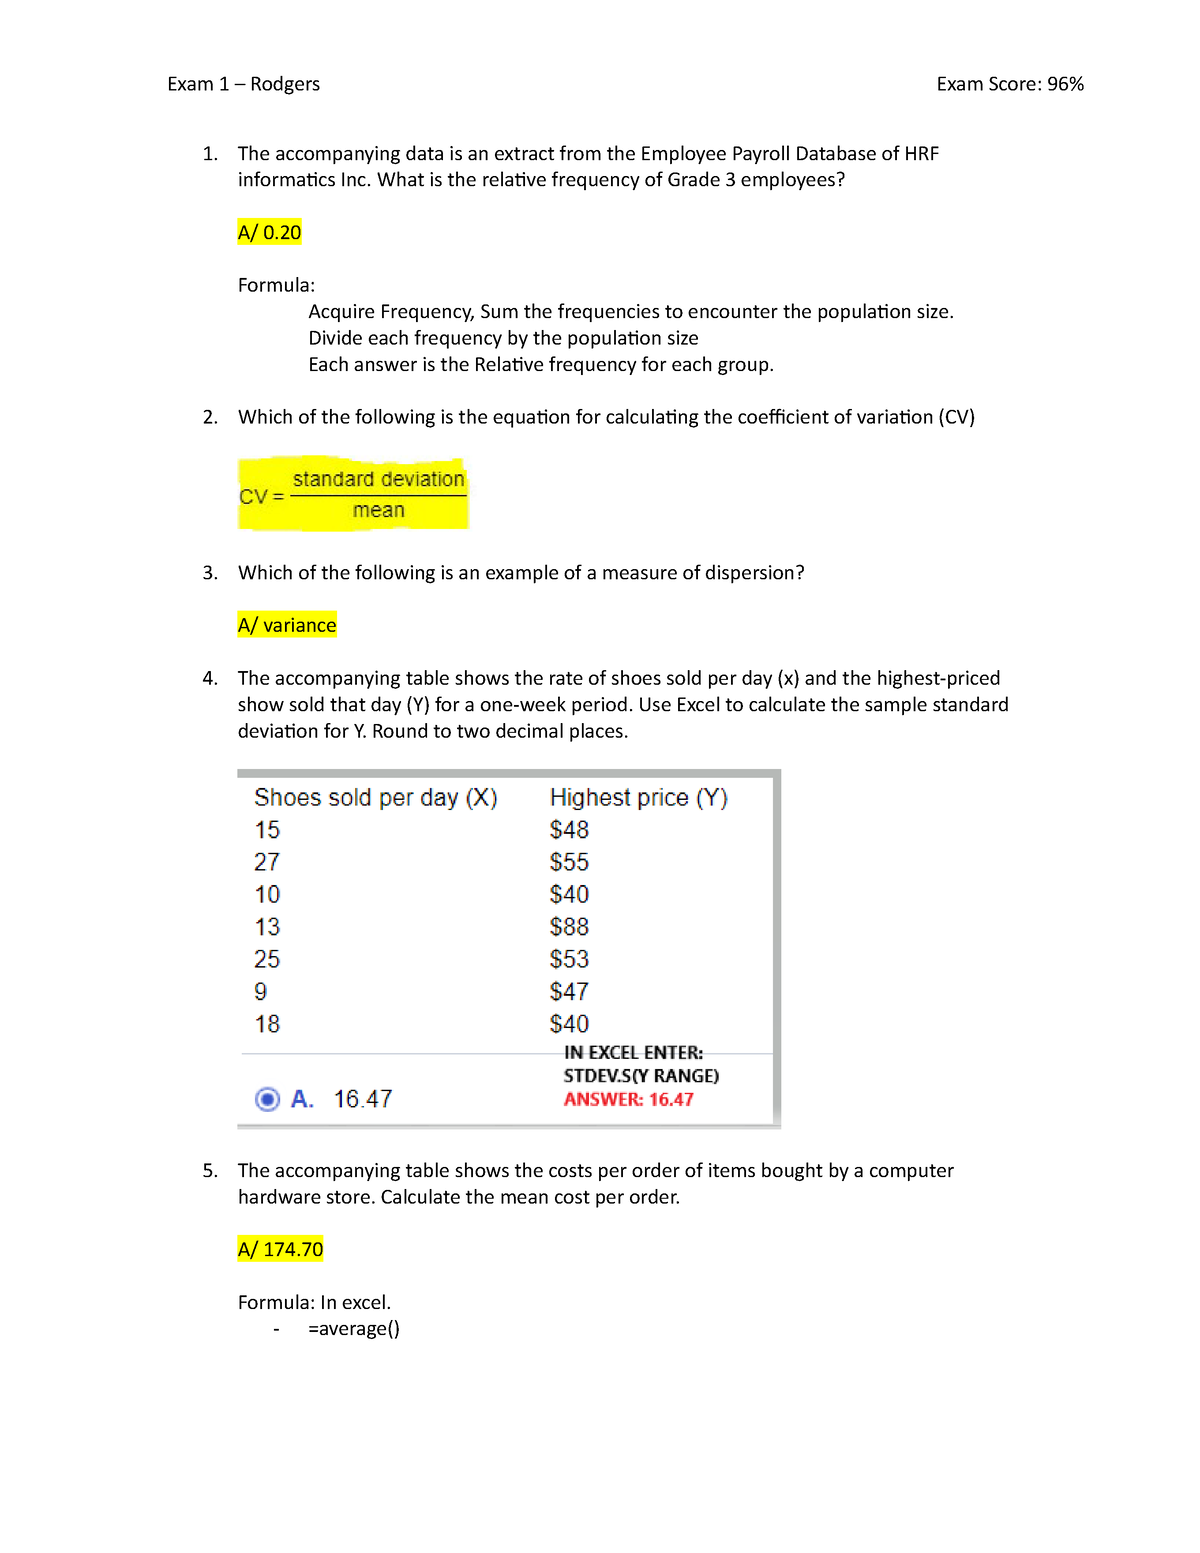 Exam 1 - Rodgers. shshdhdjdjdjdjdjdjd - The accompanyinginformatics Inc ...